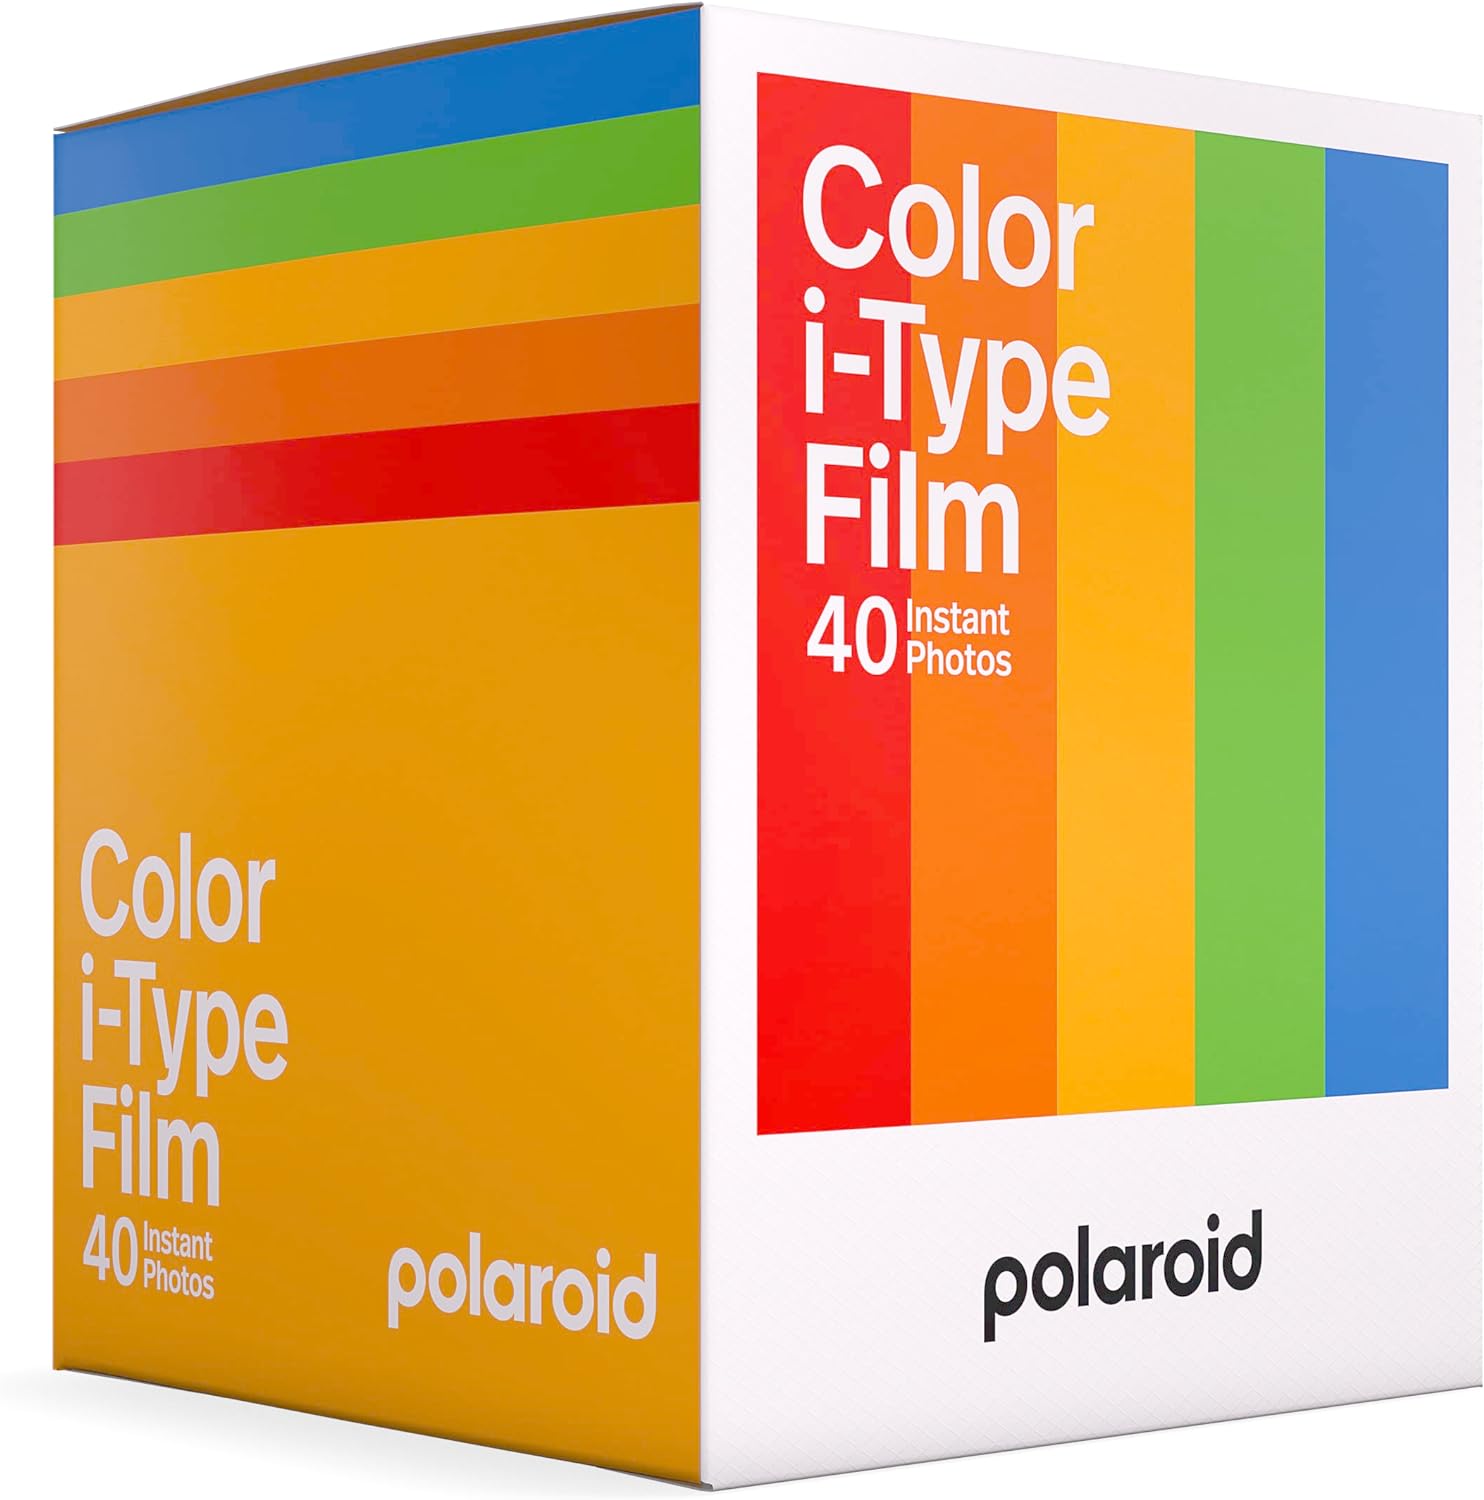 Exploring Polaroid Color i-Type Instant Film